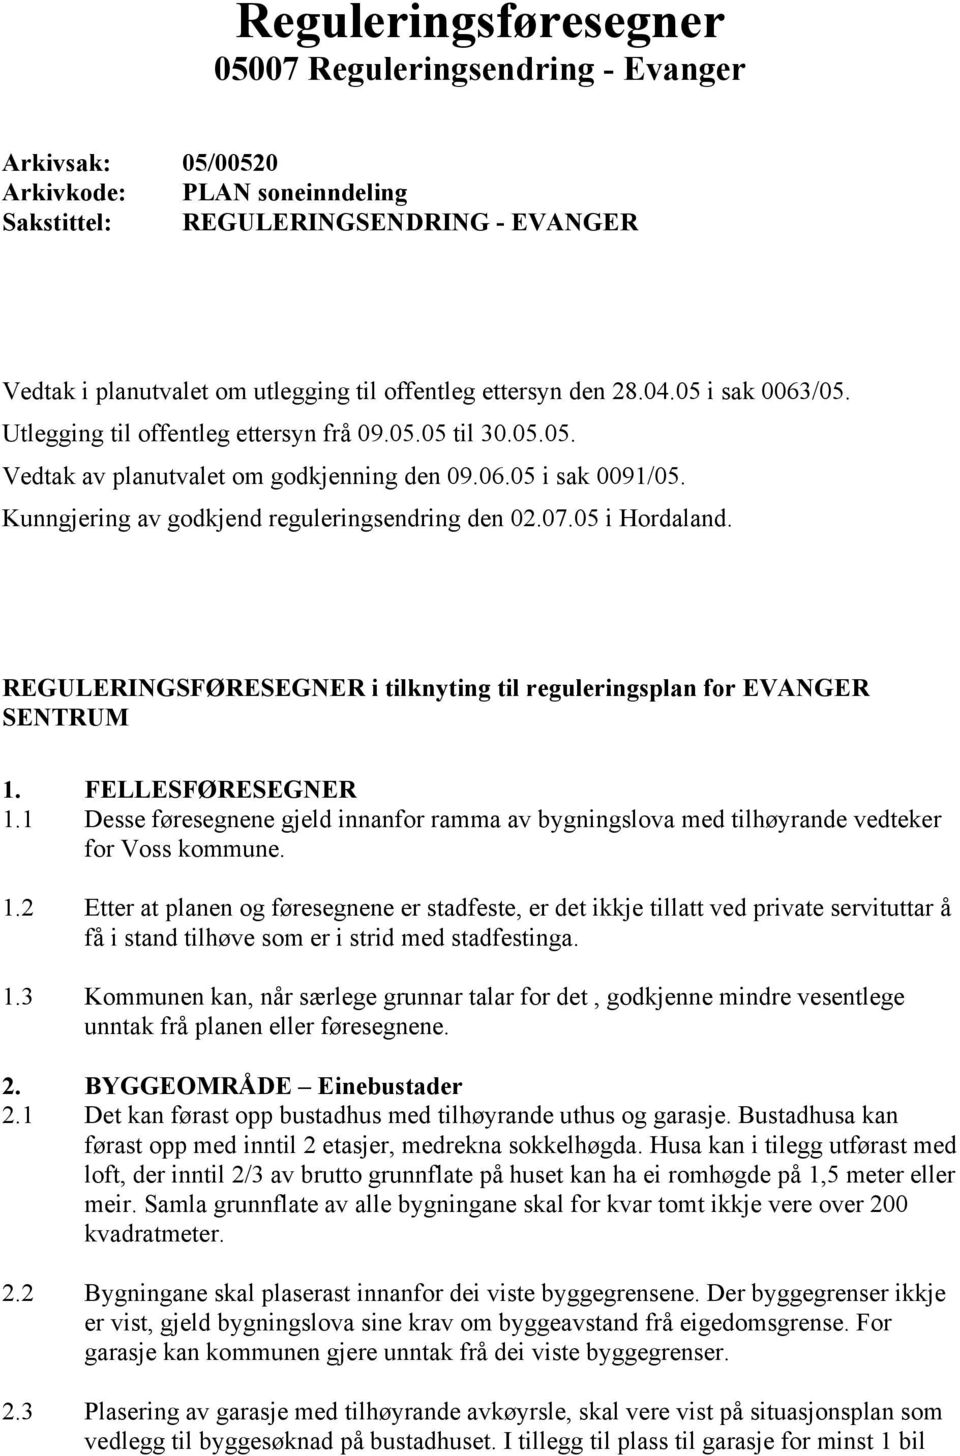 Kunngjering av godkjend reguleringsendring den 02.07.05 i Hordaland. REGULERINGSFØRESEGNER i tilknyting til reguleringsplan for EVANGER SENTRUM 1. 1.1 1.2 1.3 2. 2.1 2.2 2.